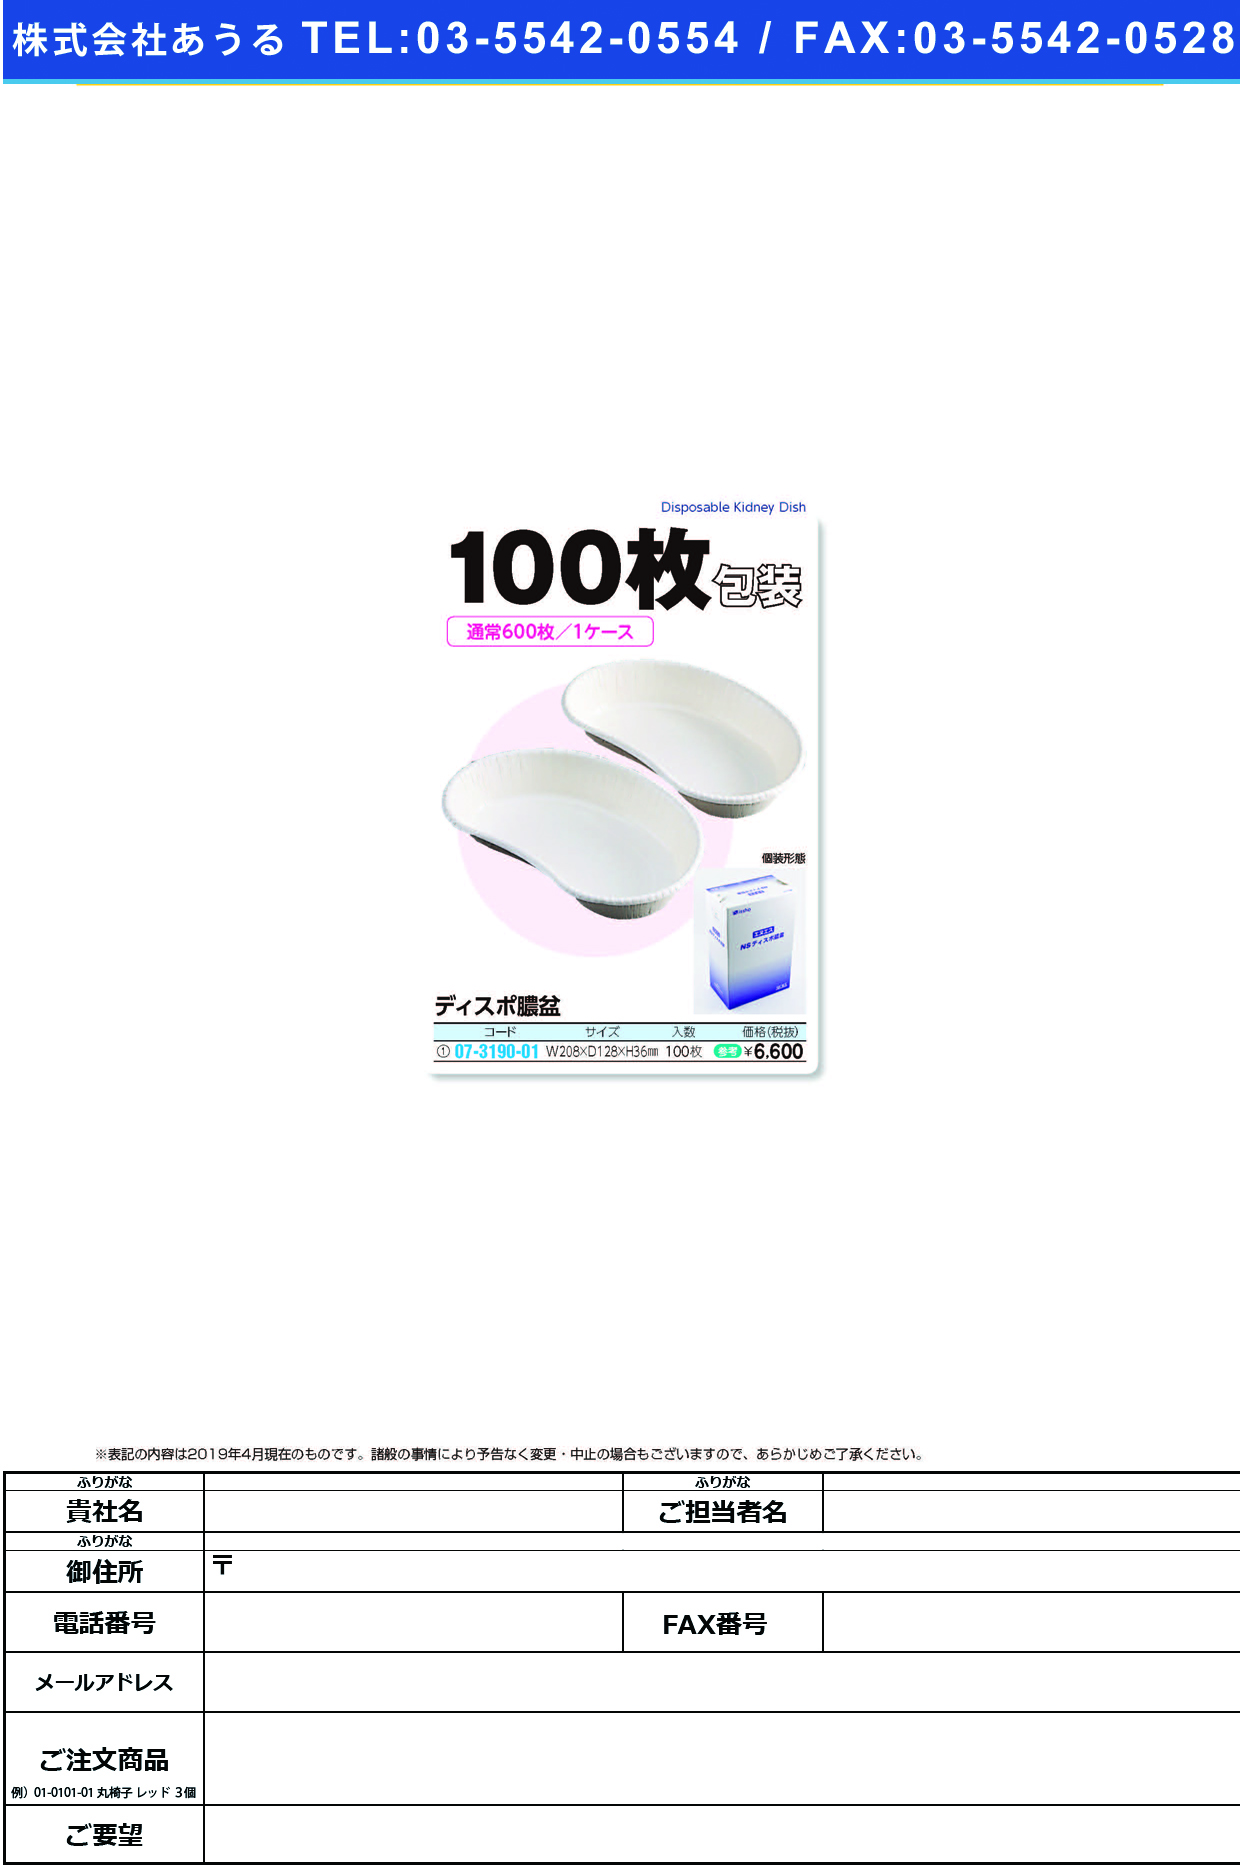 (07-3190-01)ディスポ膿盆Ｋ−１（バラ） 100ﾏｲｲﾘ ﾃﾞｨｽﾎﾟﾉｳﾎﾞﾝK-1(ﾊﾞﾗ)【1箱単位】【2019年カタログ商品】